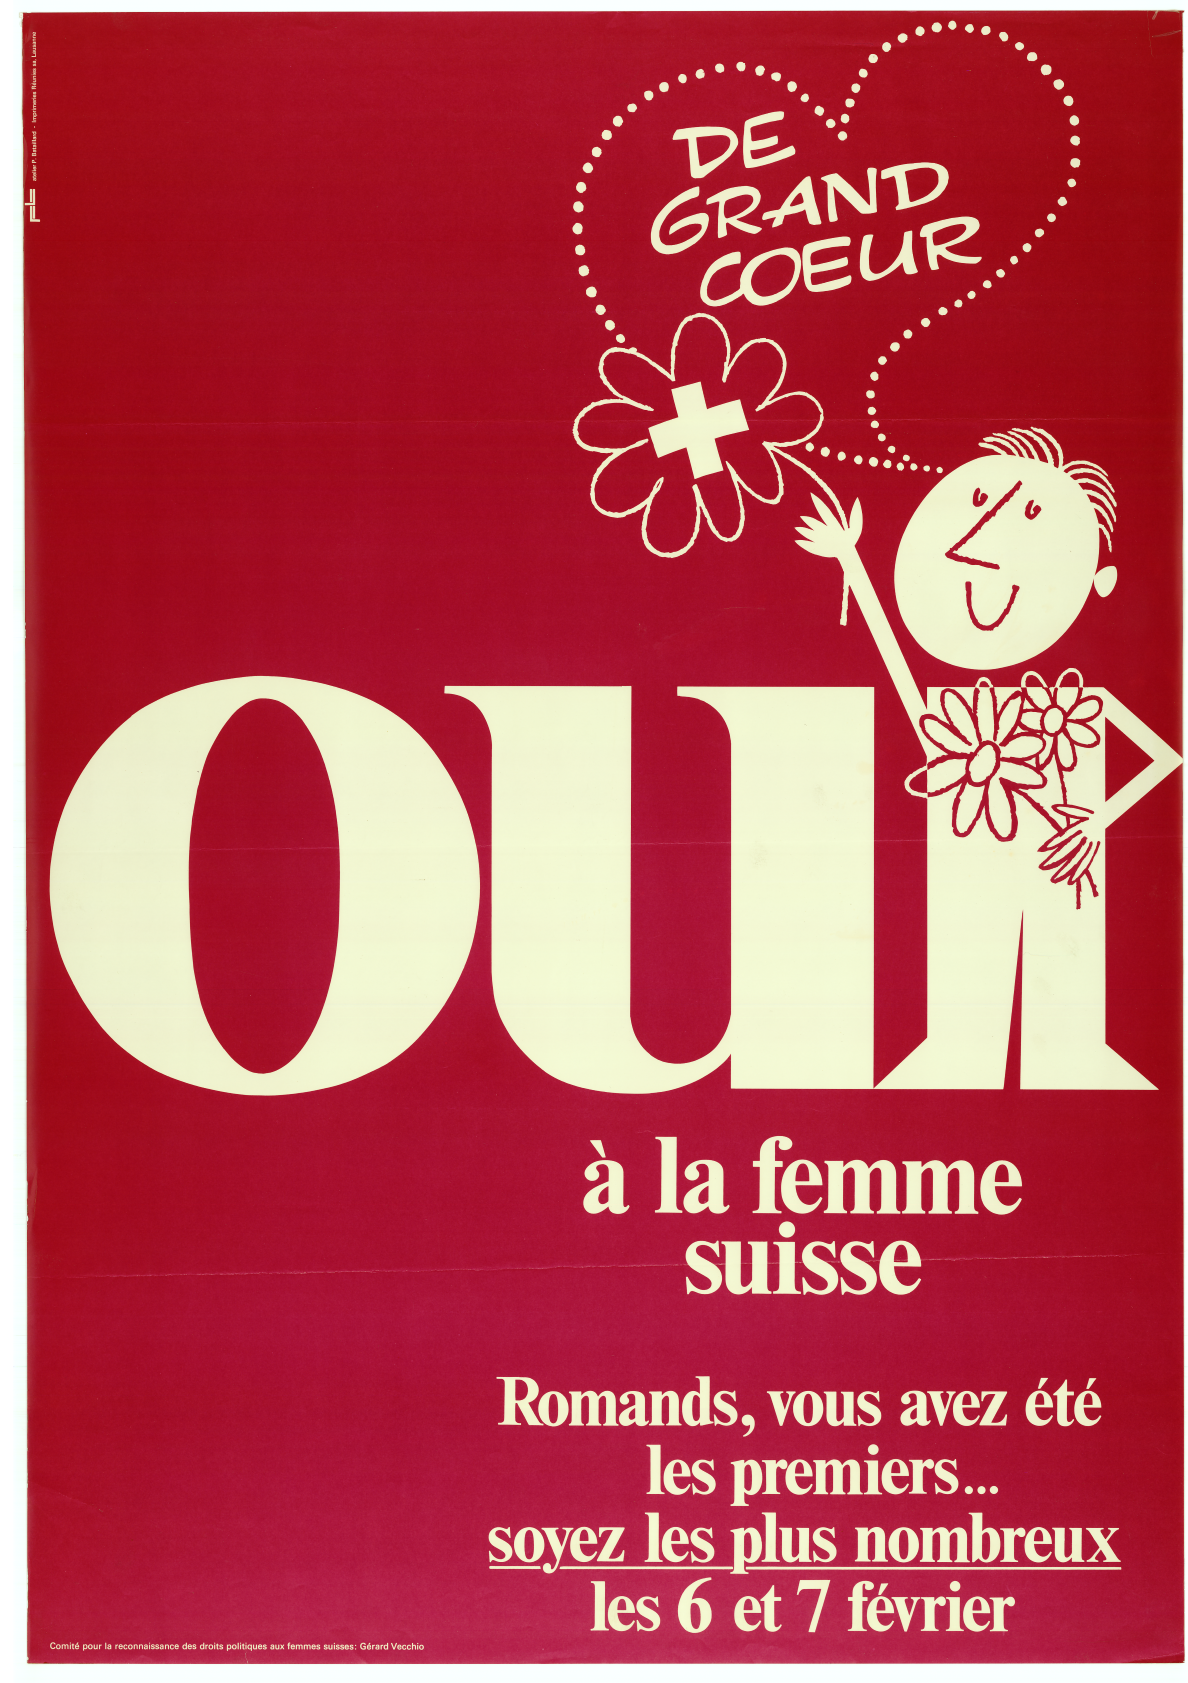 Comité pour la reconnaissance des droits politiques aux femmes suisses, 1971 © Fondation Gosteli, collection d’affiches